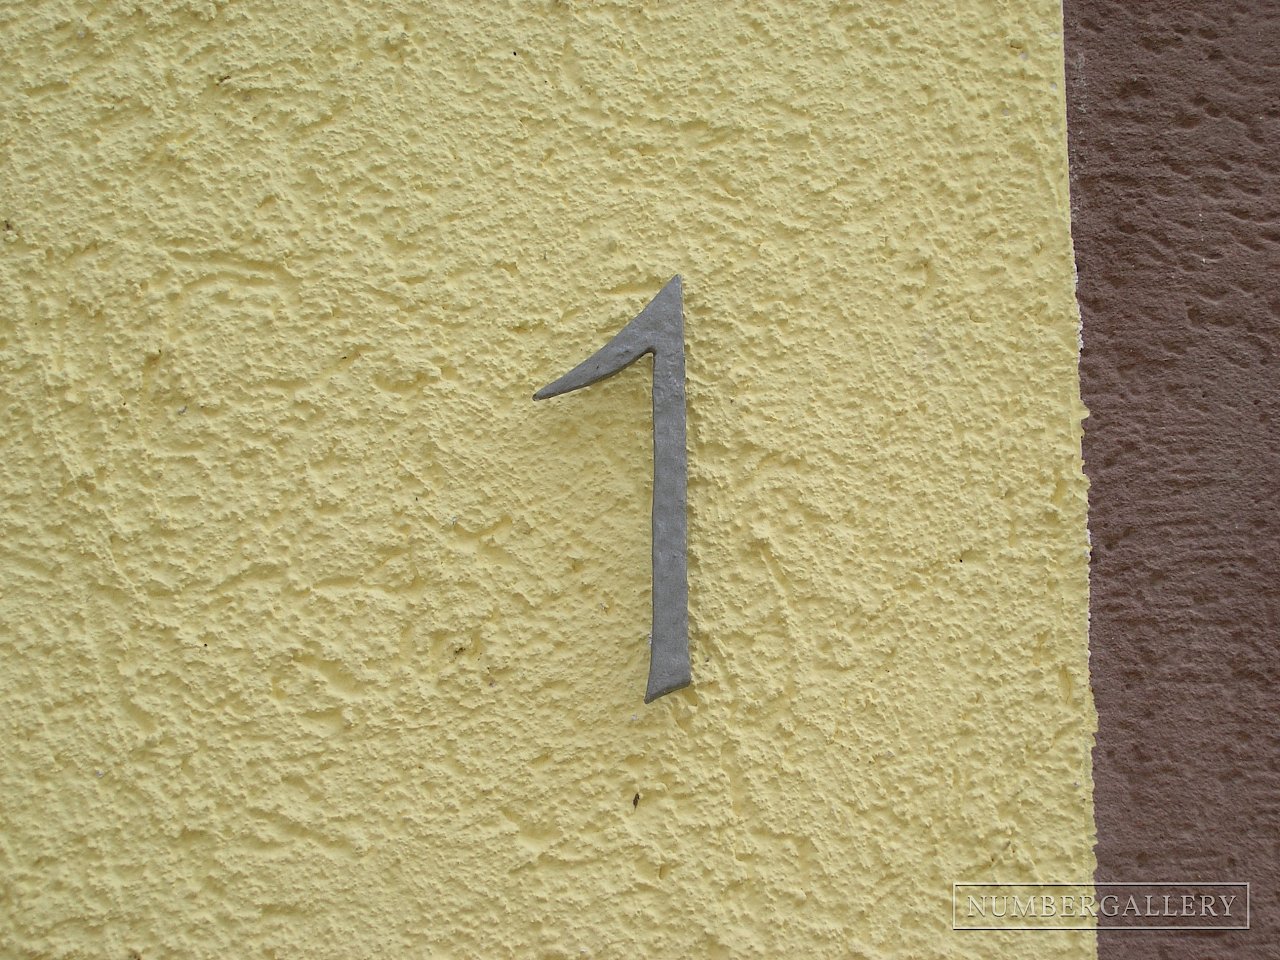 Hausnummer in Ettenheim